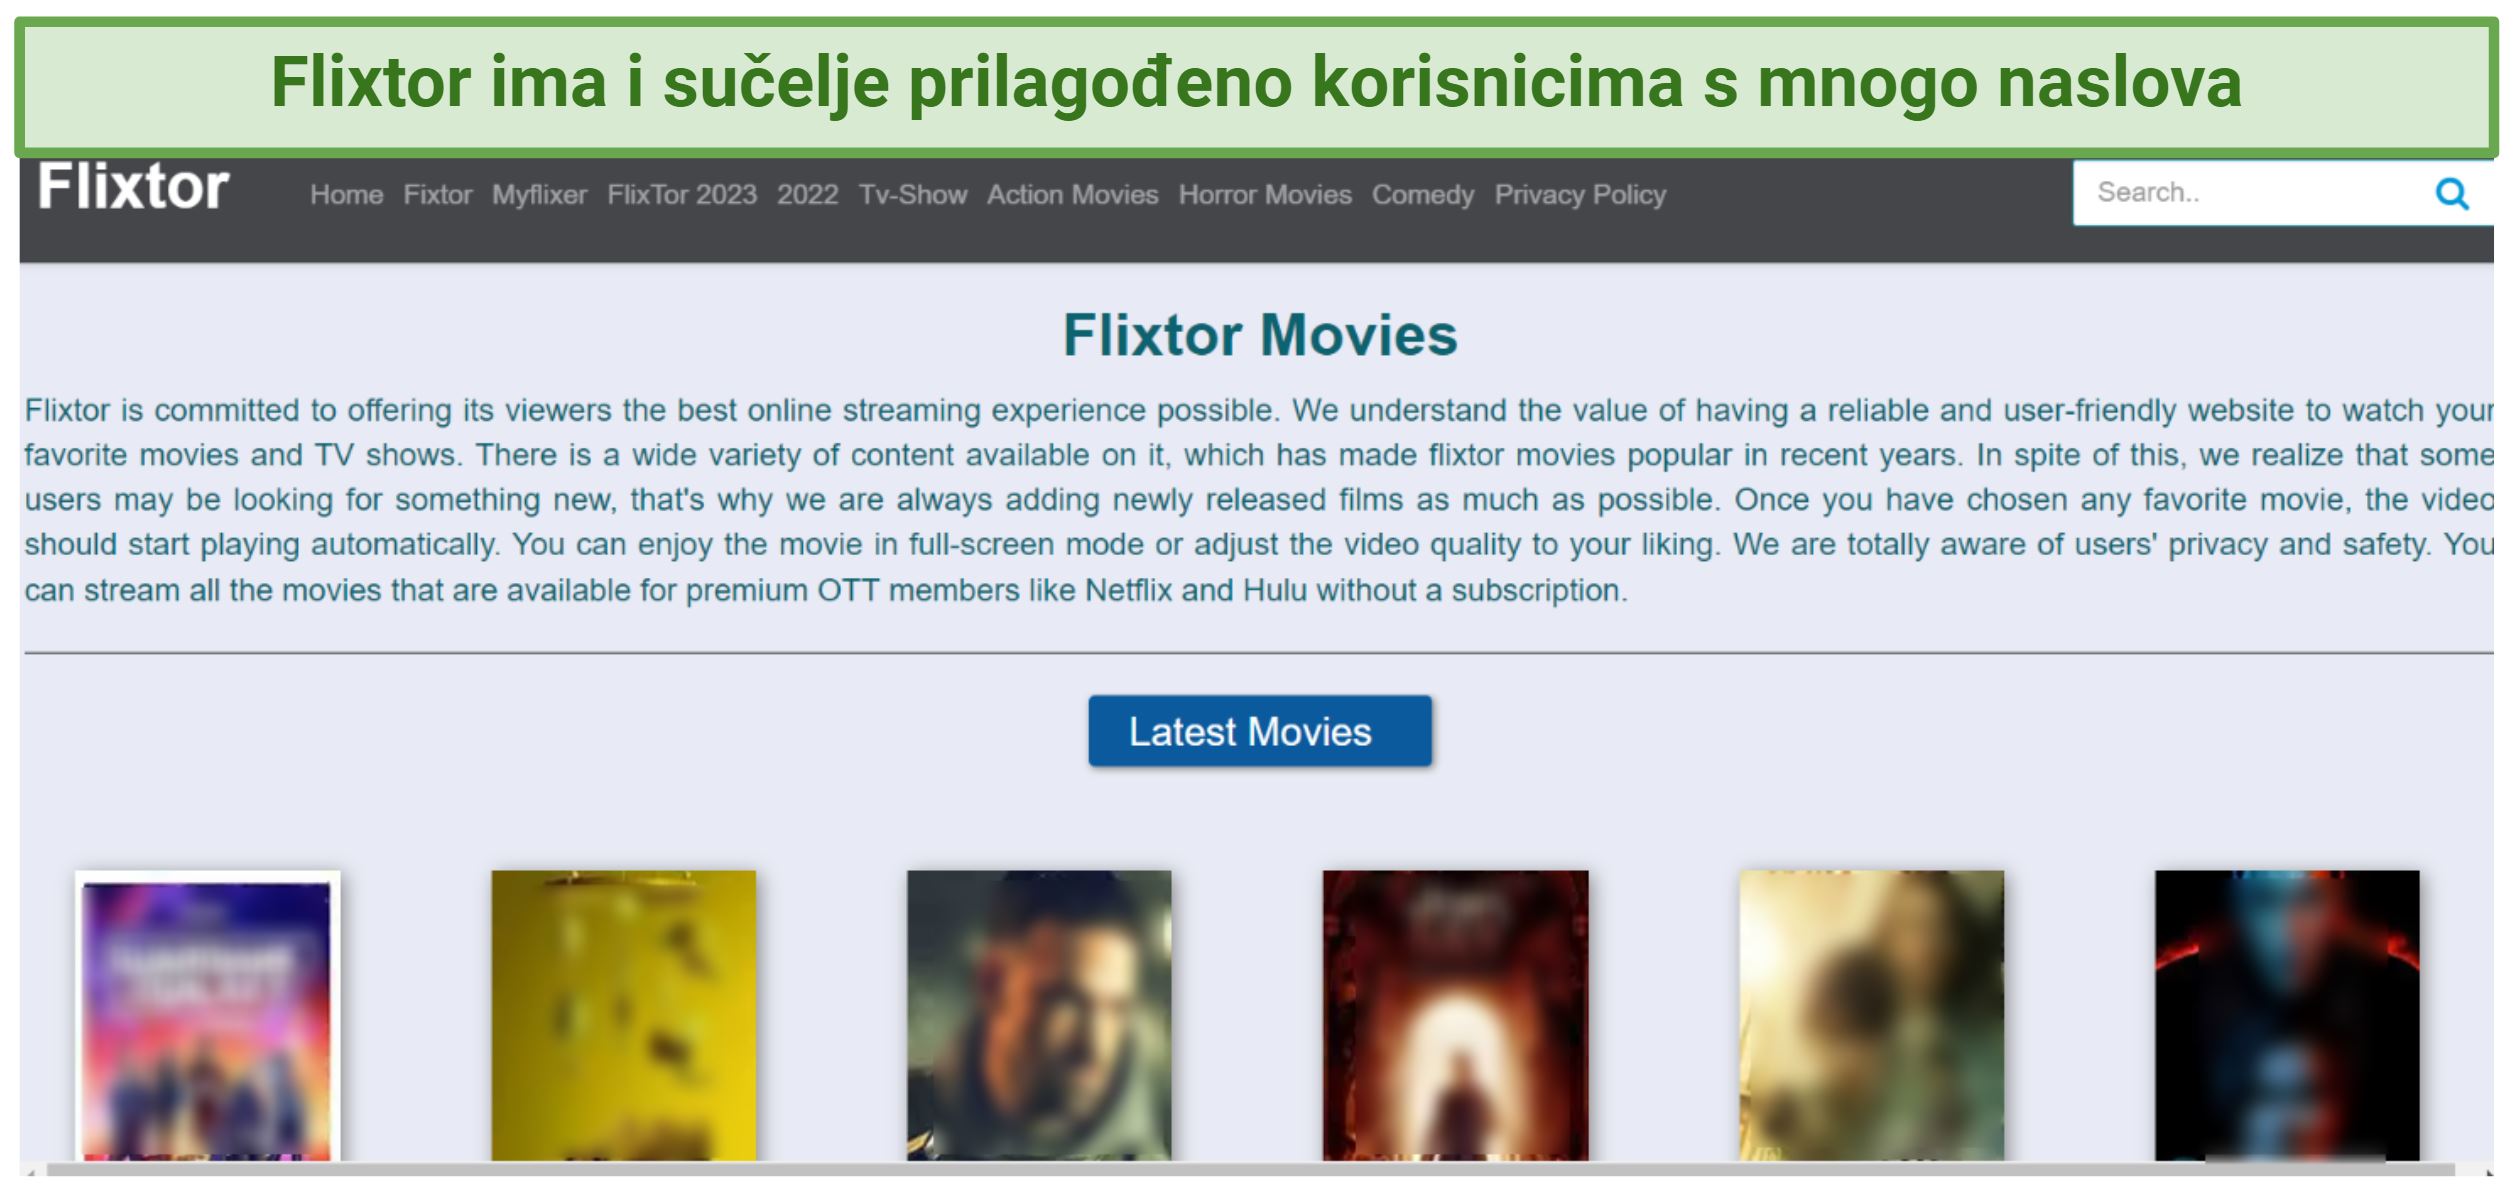 A screenshot of Flixter's interface